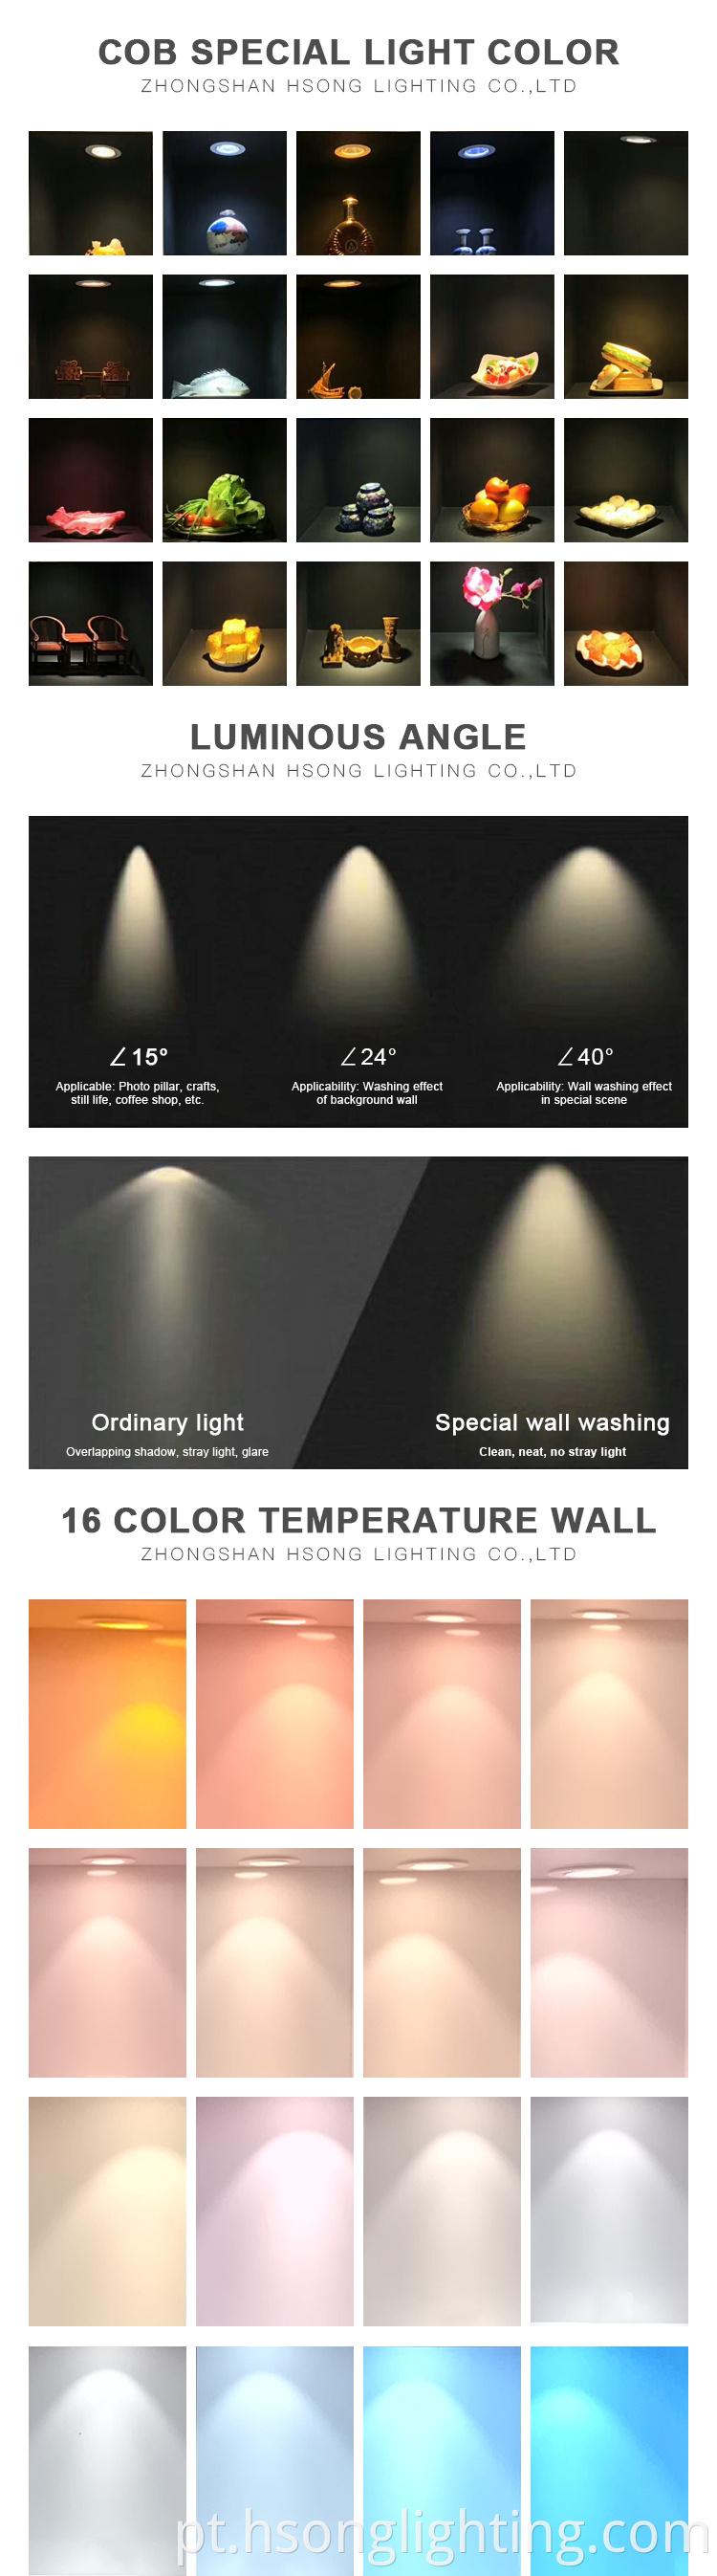 Novo Design Branco/Preto Incorporado Cob LED Downlightless Downlight 15W para lavadora de parede do hotel